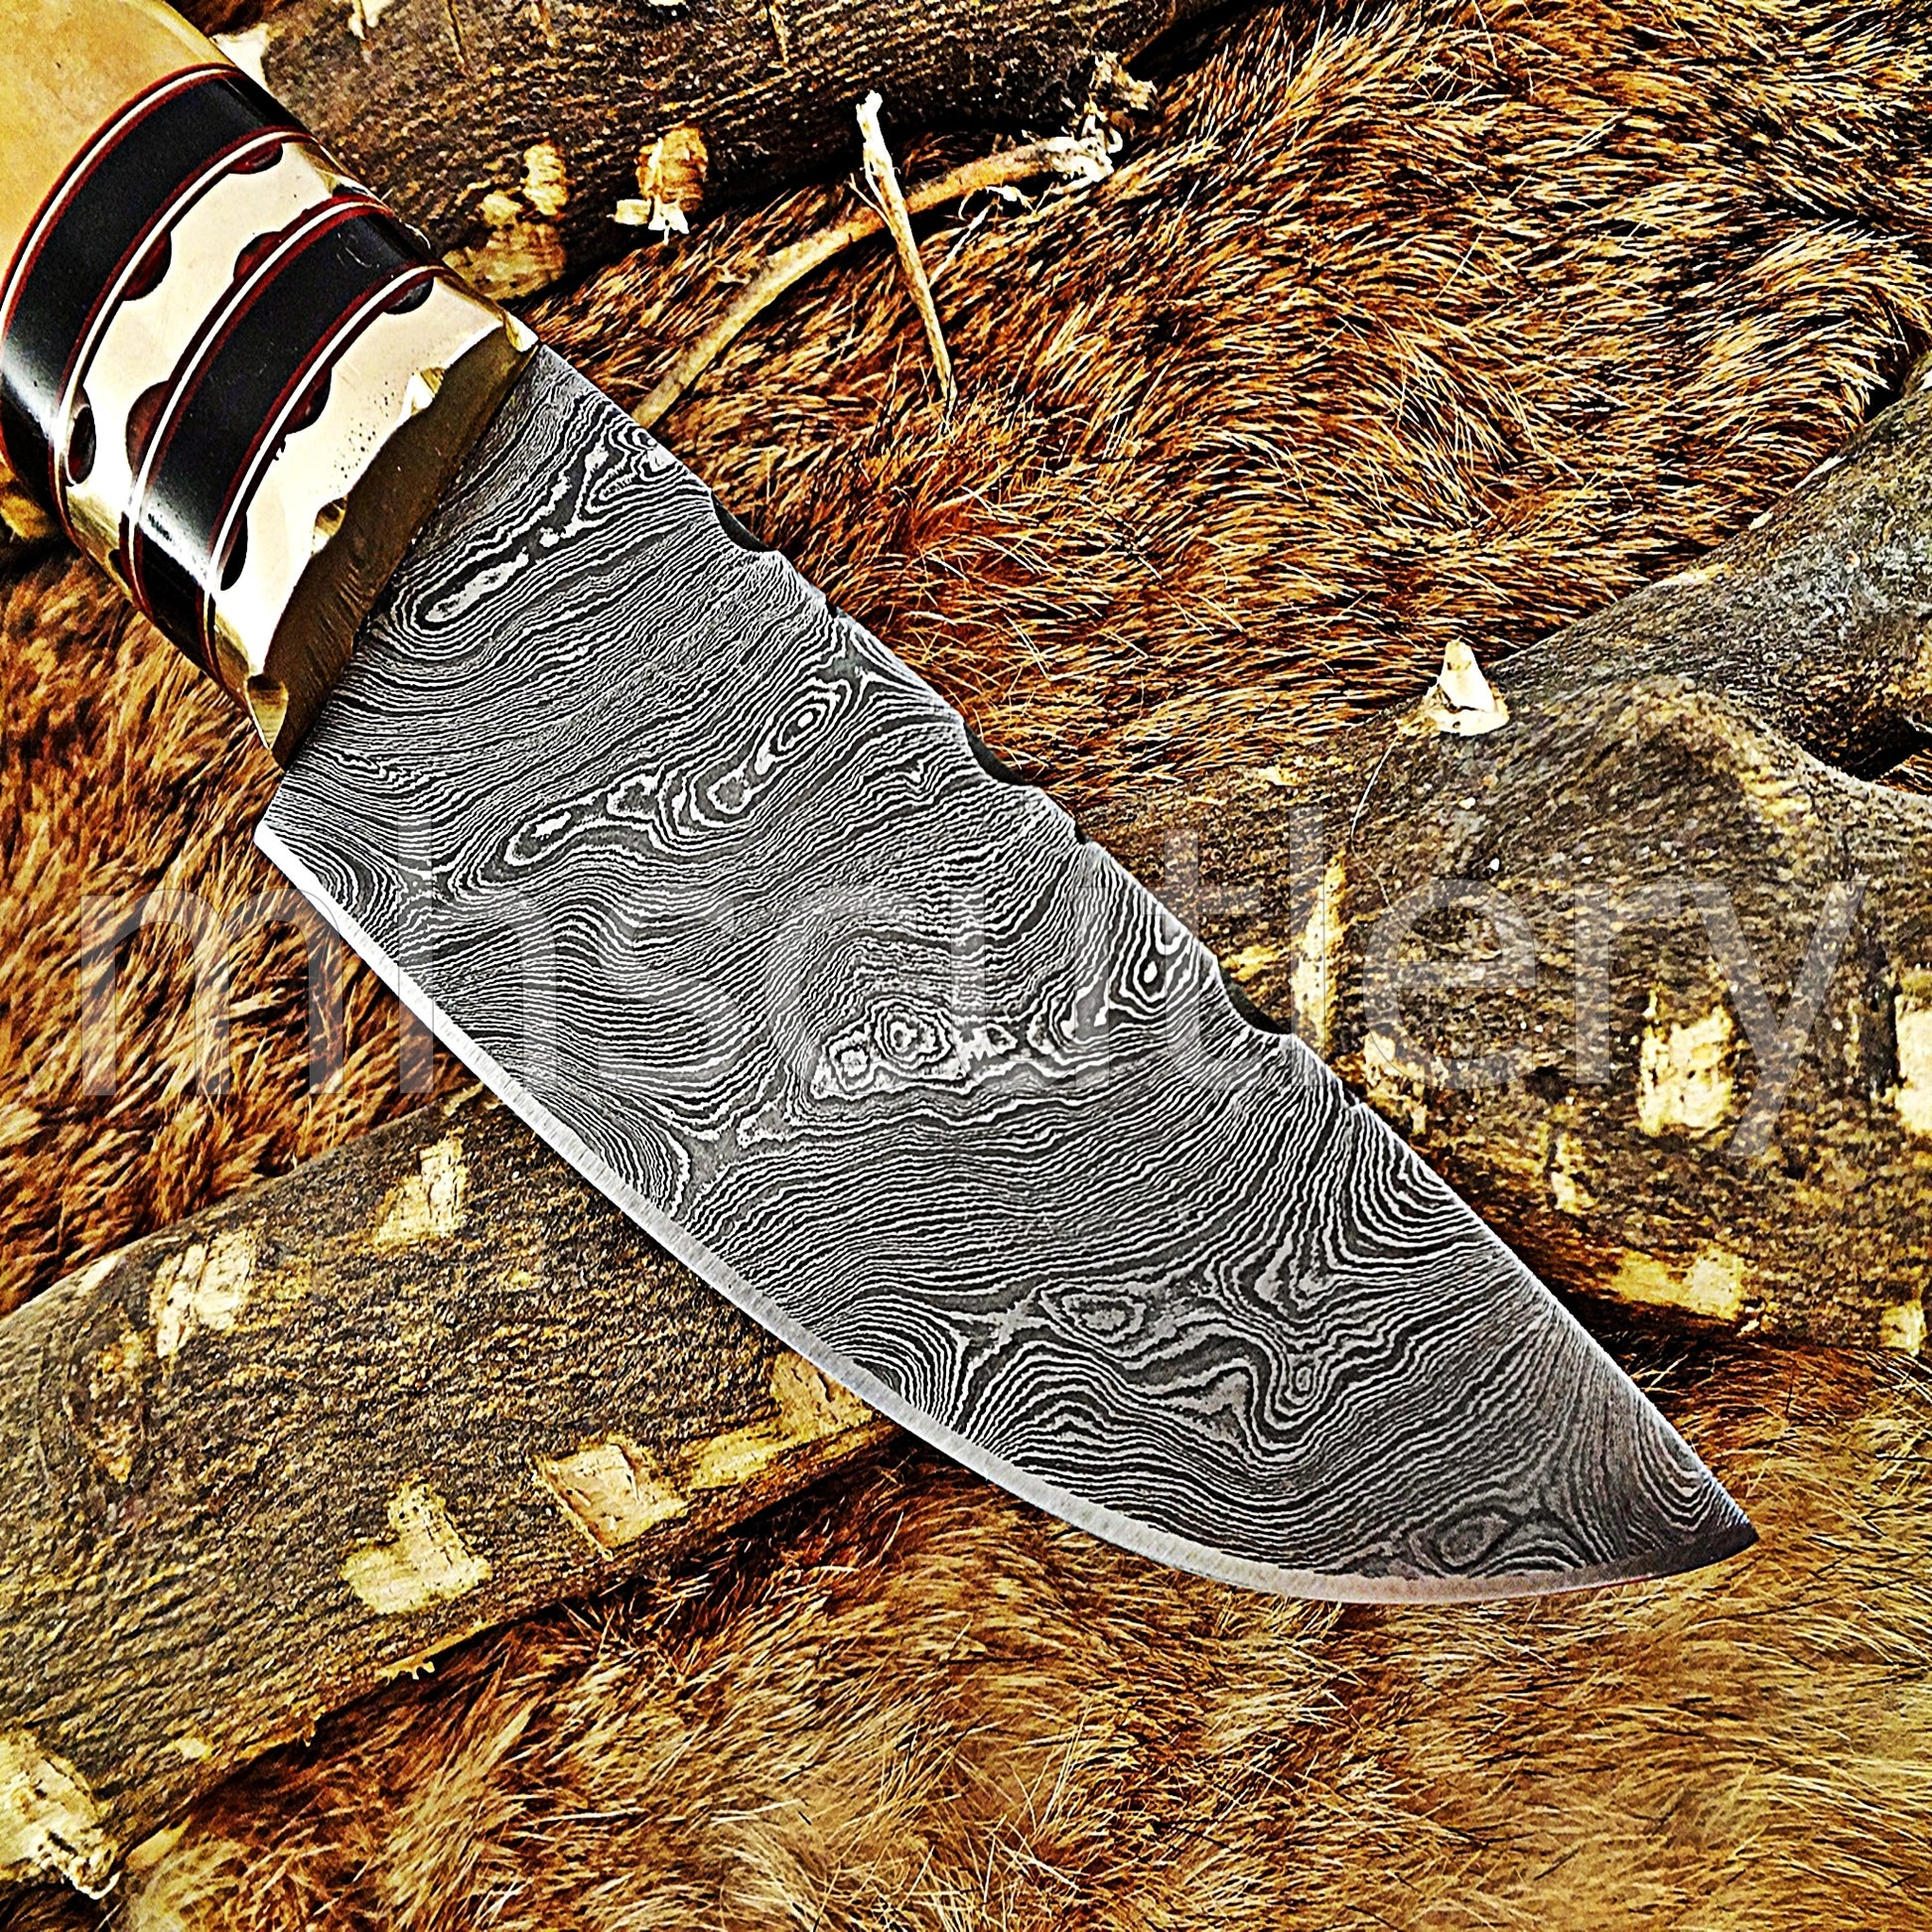 Handmade Damascus Steel Hunting Skinner Rat Tail Knife | mhscutlery